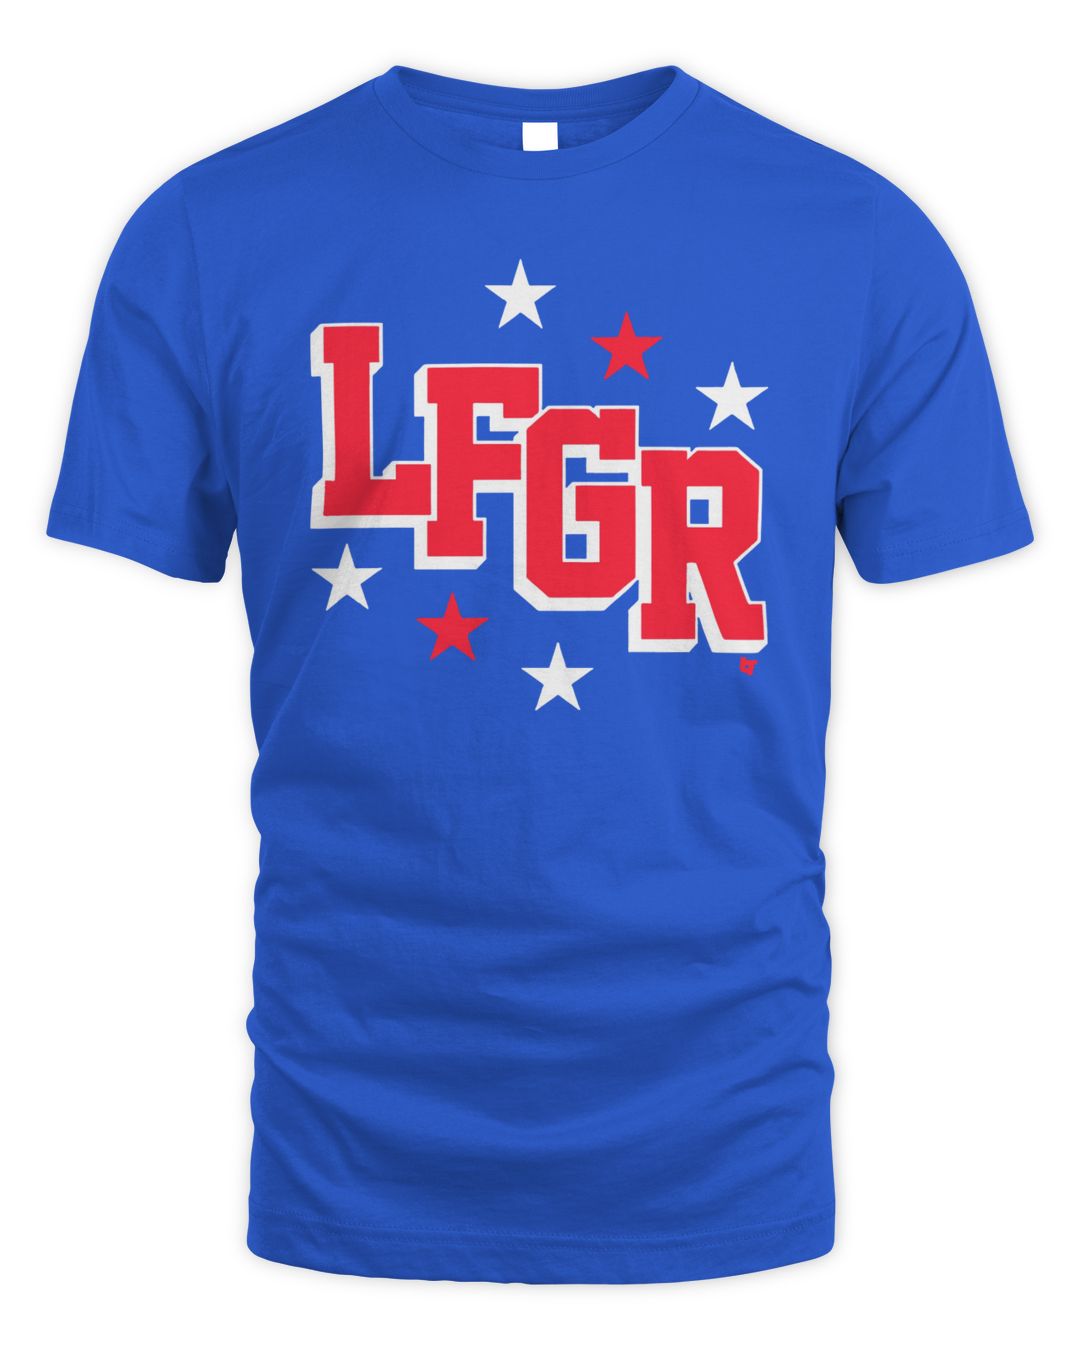 LFGR Shirt